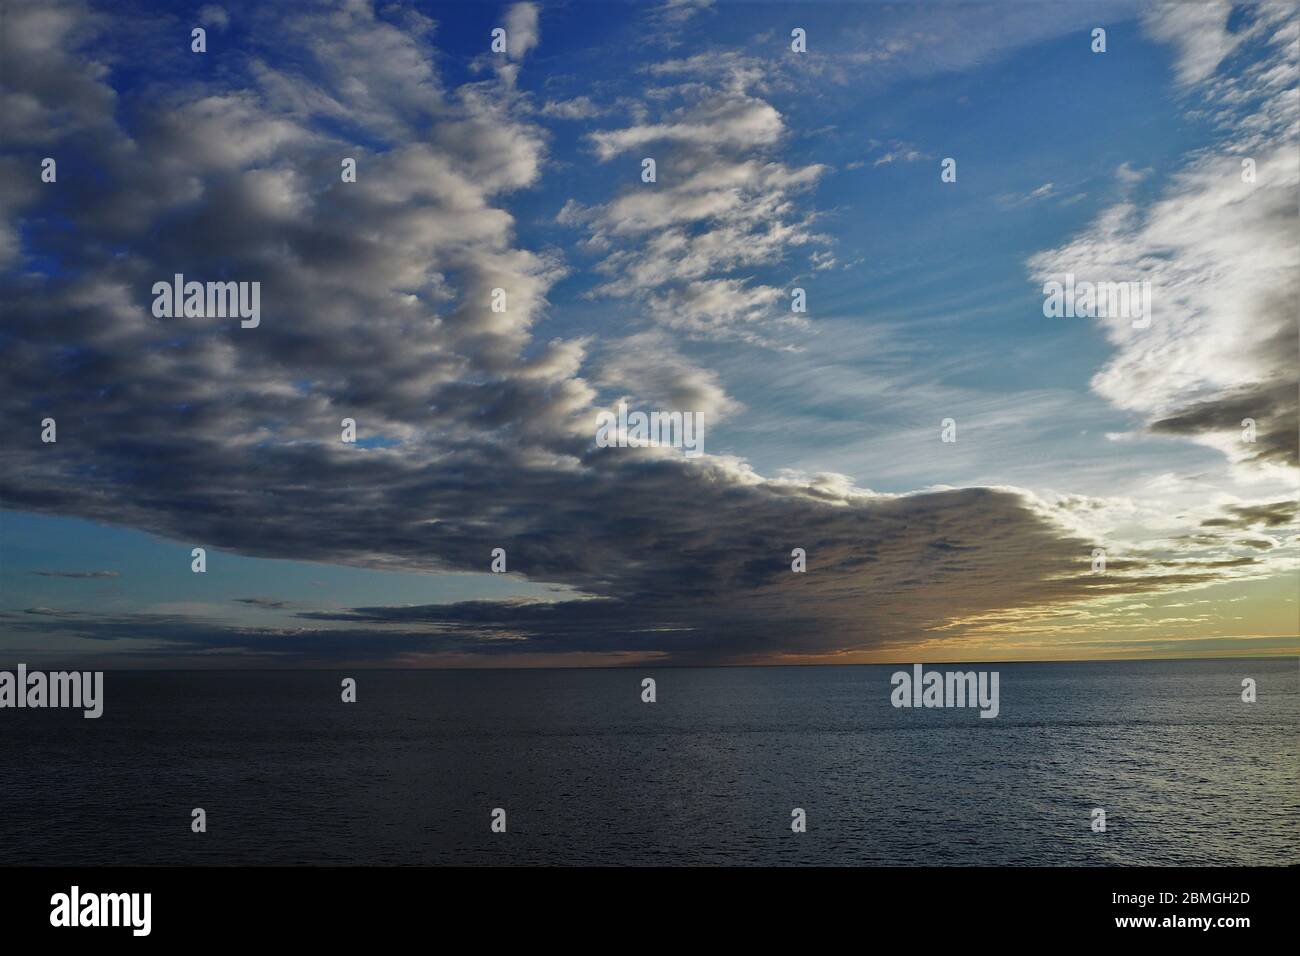 Coucher de soleil panoramique sur la mer Ligurienne, Imperia Porto Maurizio, Italie Banque D'Images